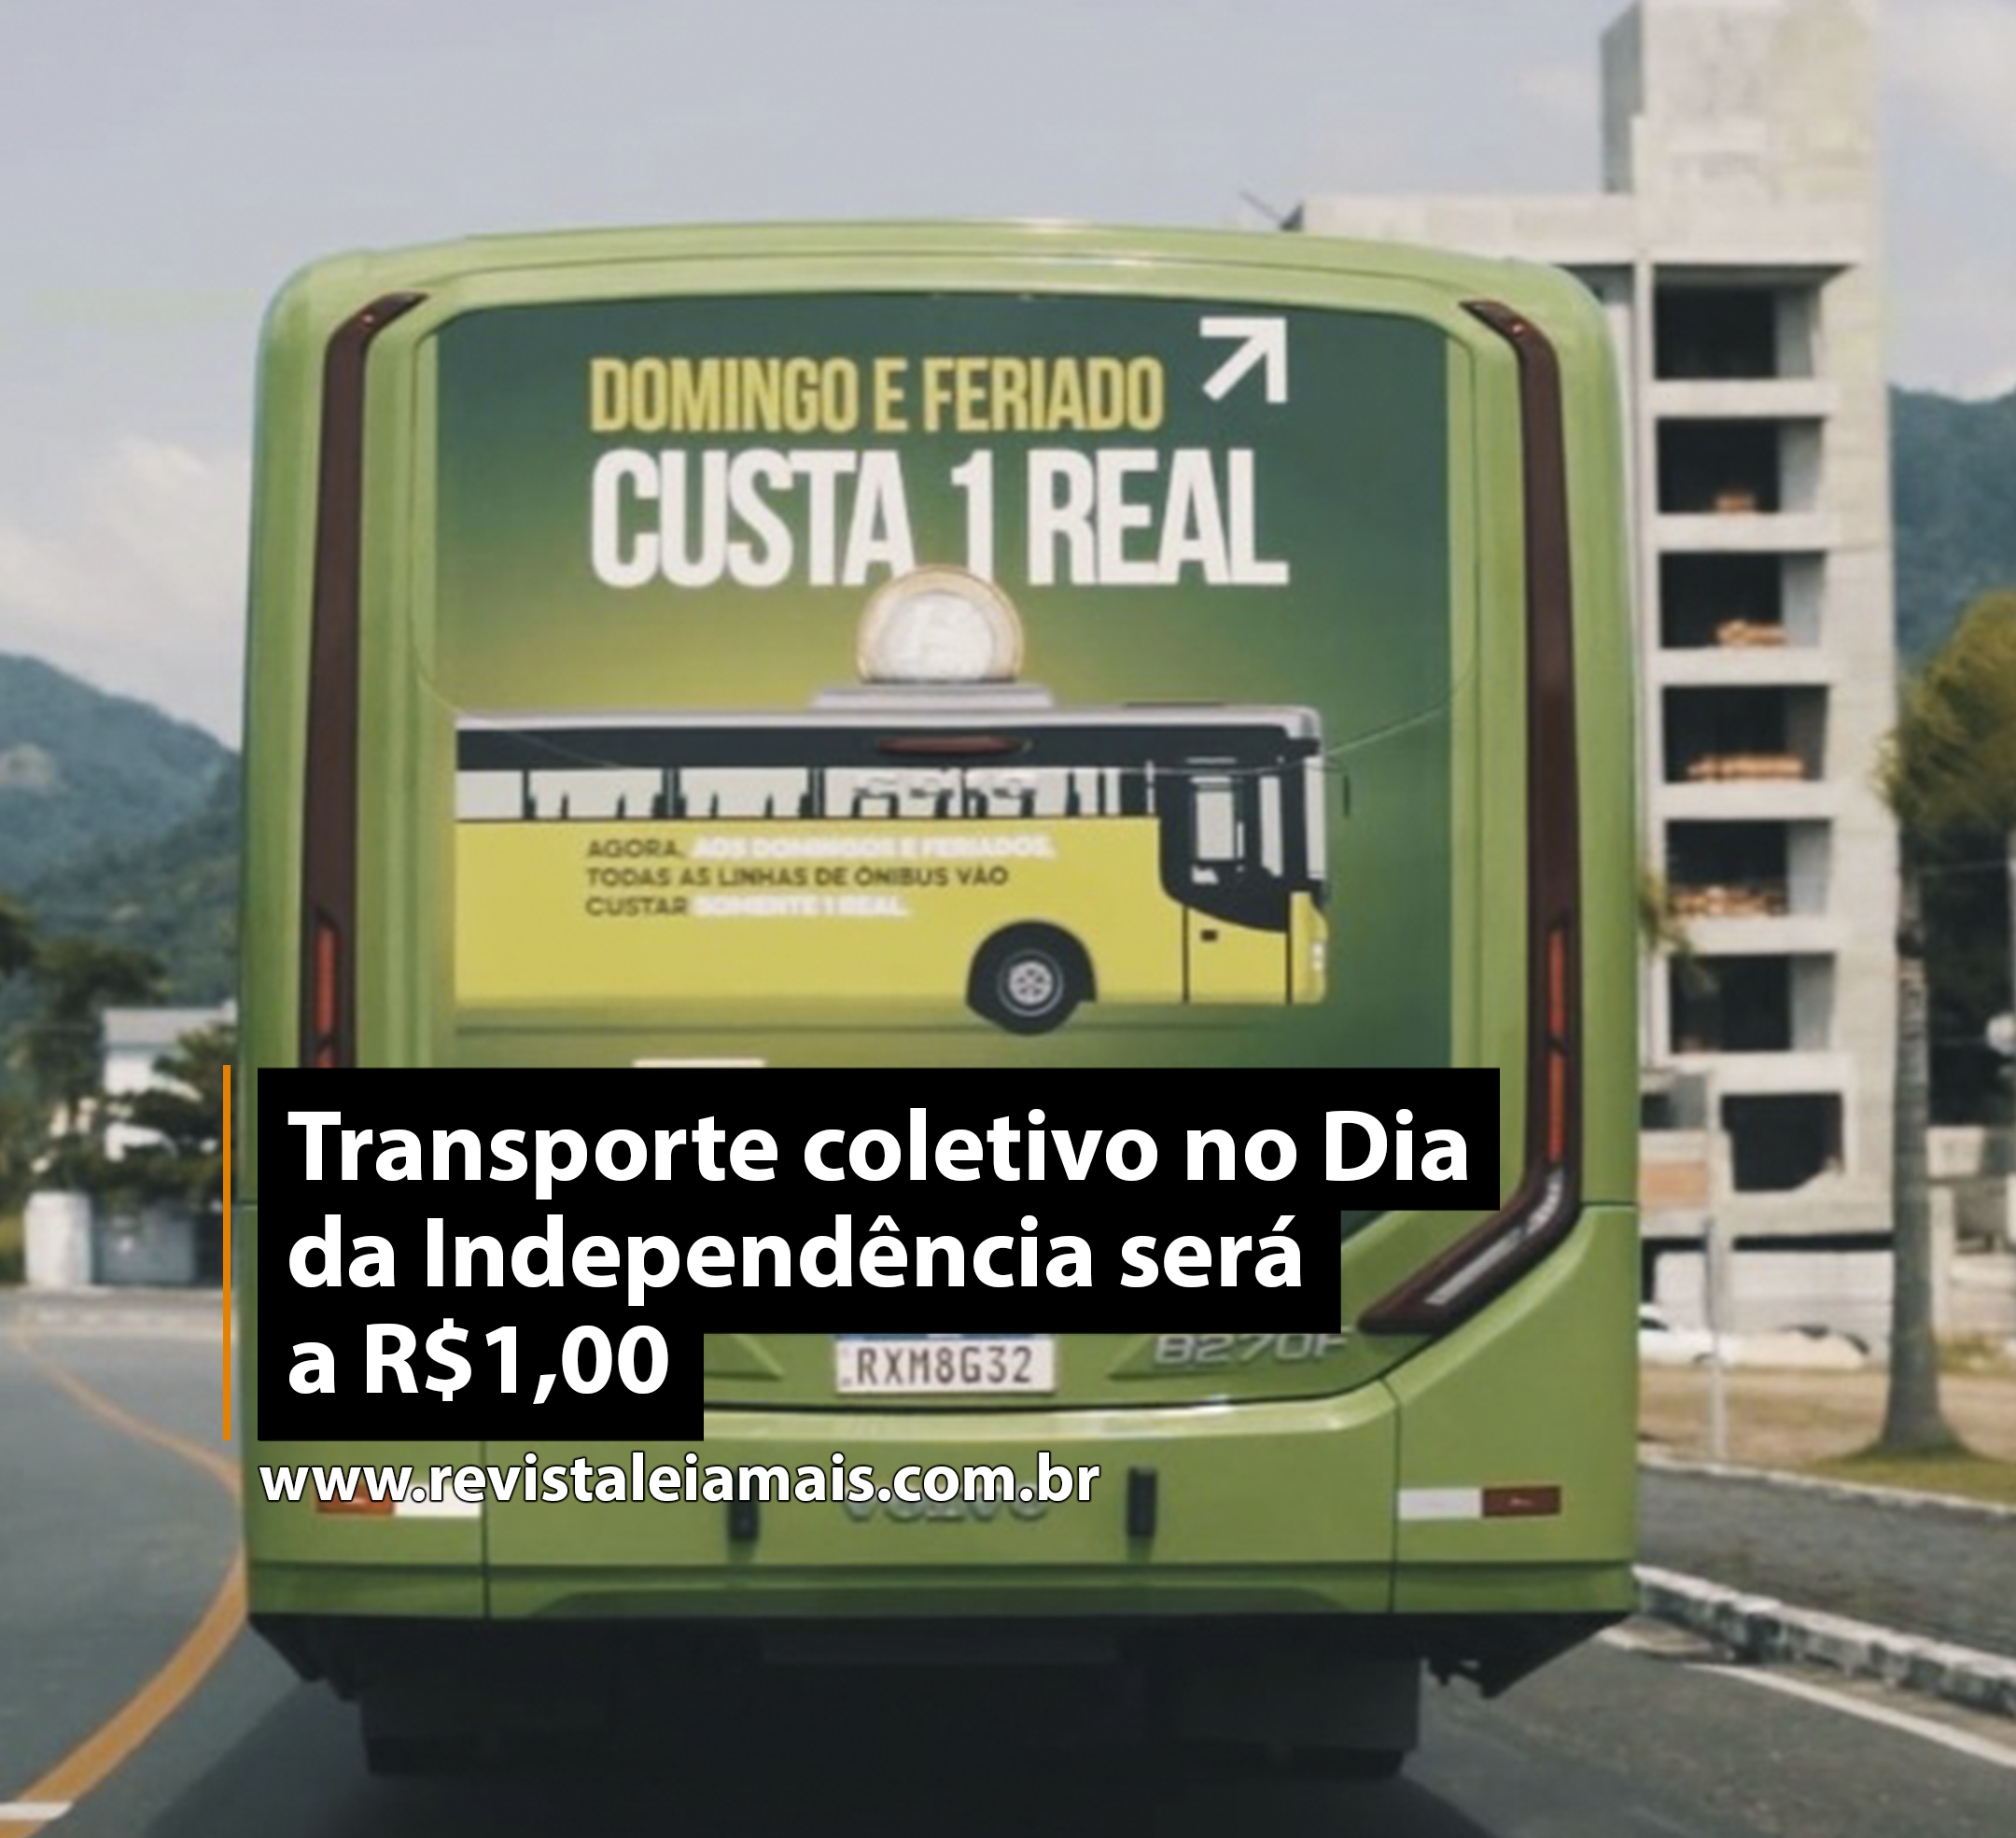 Transporte coletivo no Dia da Independência será a R$1,00